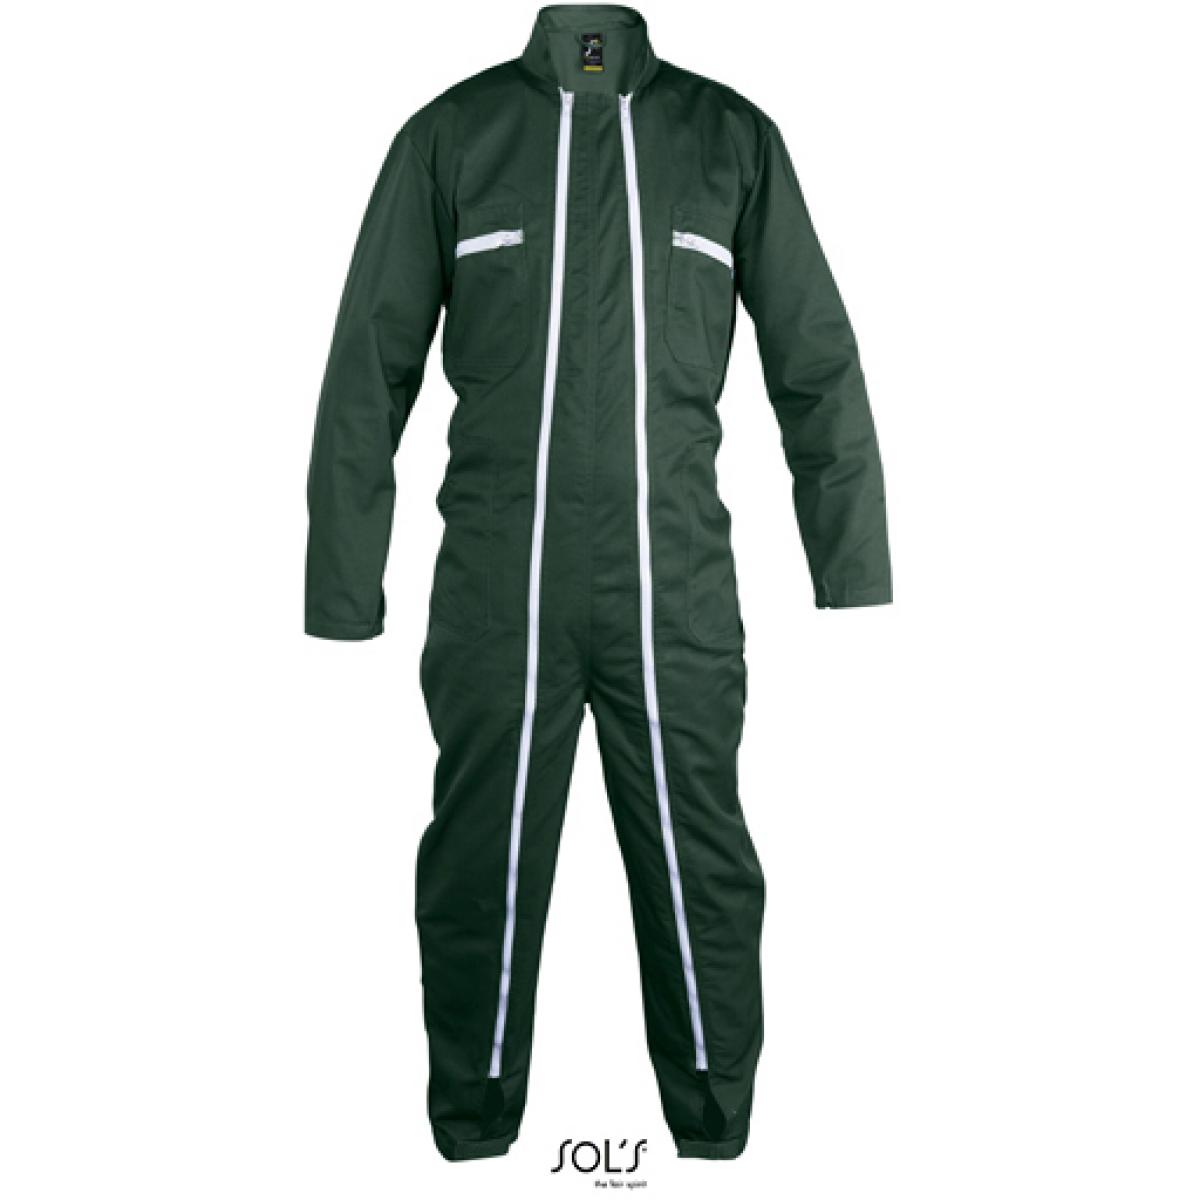 Hersteller: SOLs ProWear Herstellernummer: 80901 Artikelbezeichnung: Workwear Overall Jupiter Pro - Waschbar bis 60 °C Farbe: Green Pro